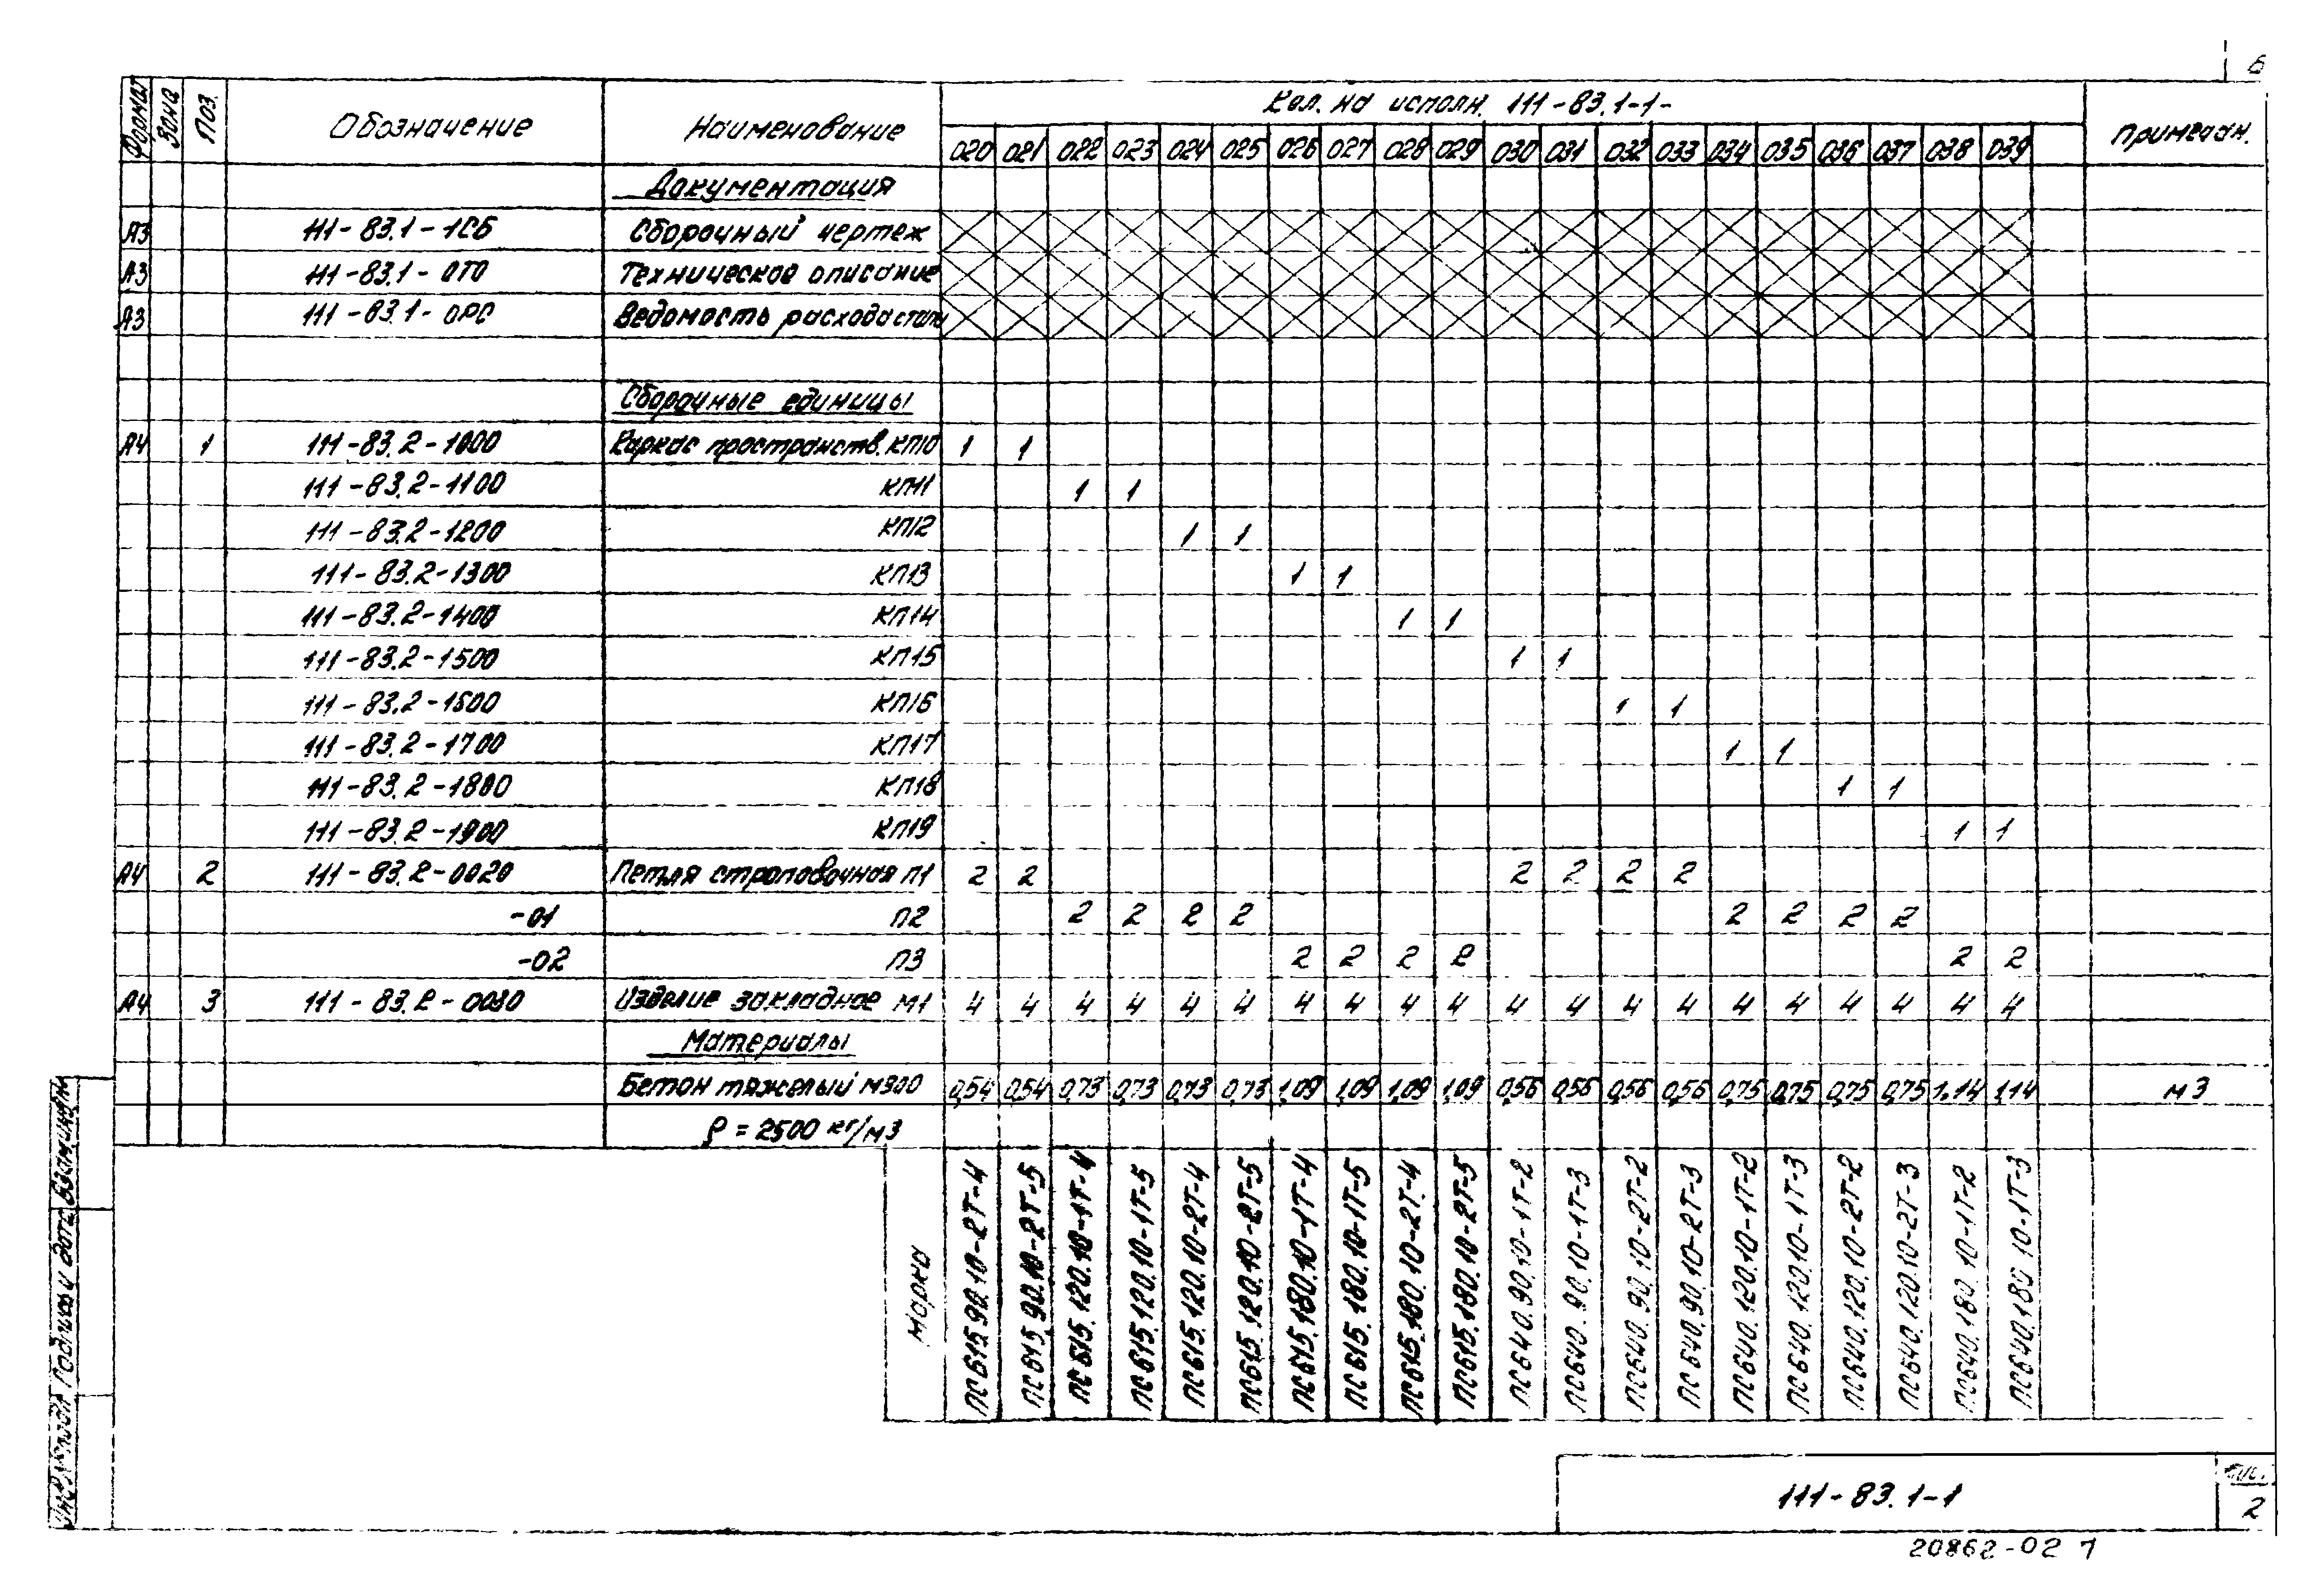 Шифр 111-83